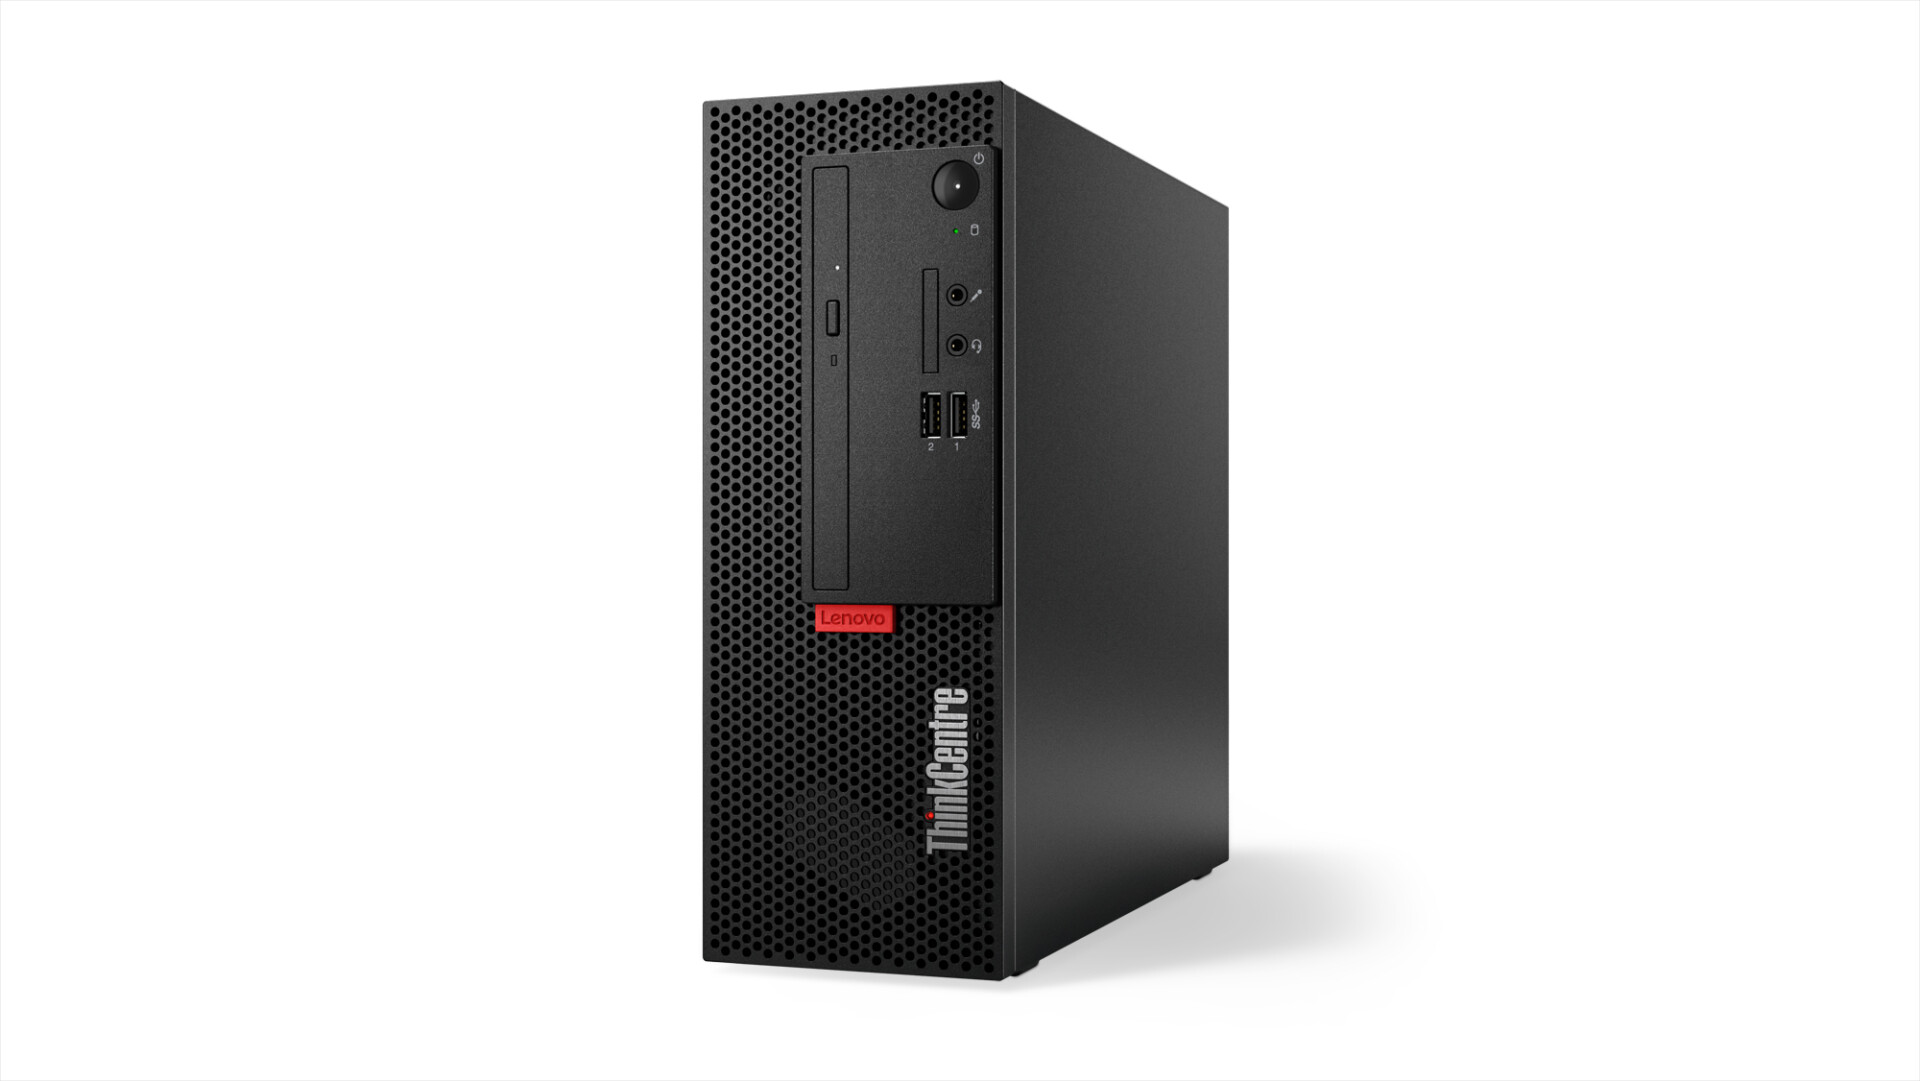 Lenovo ra mắt máy tính để bàn ThinkCentre M Series mới cho văn phòng hiện đại